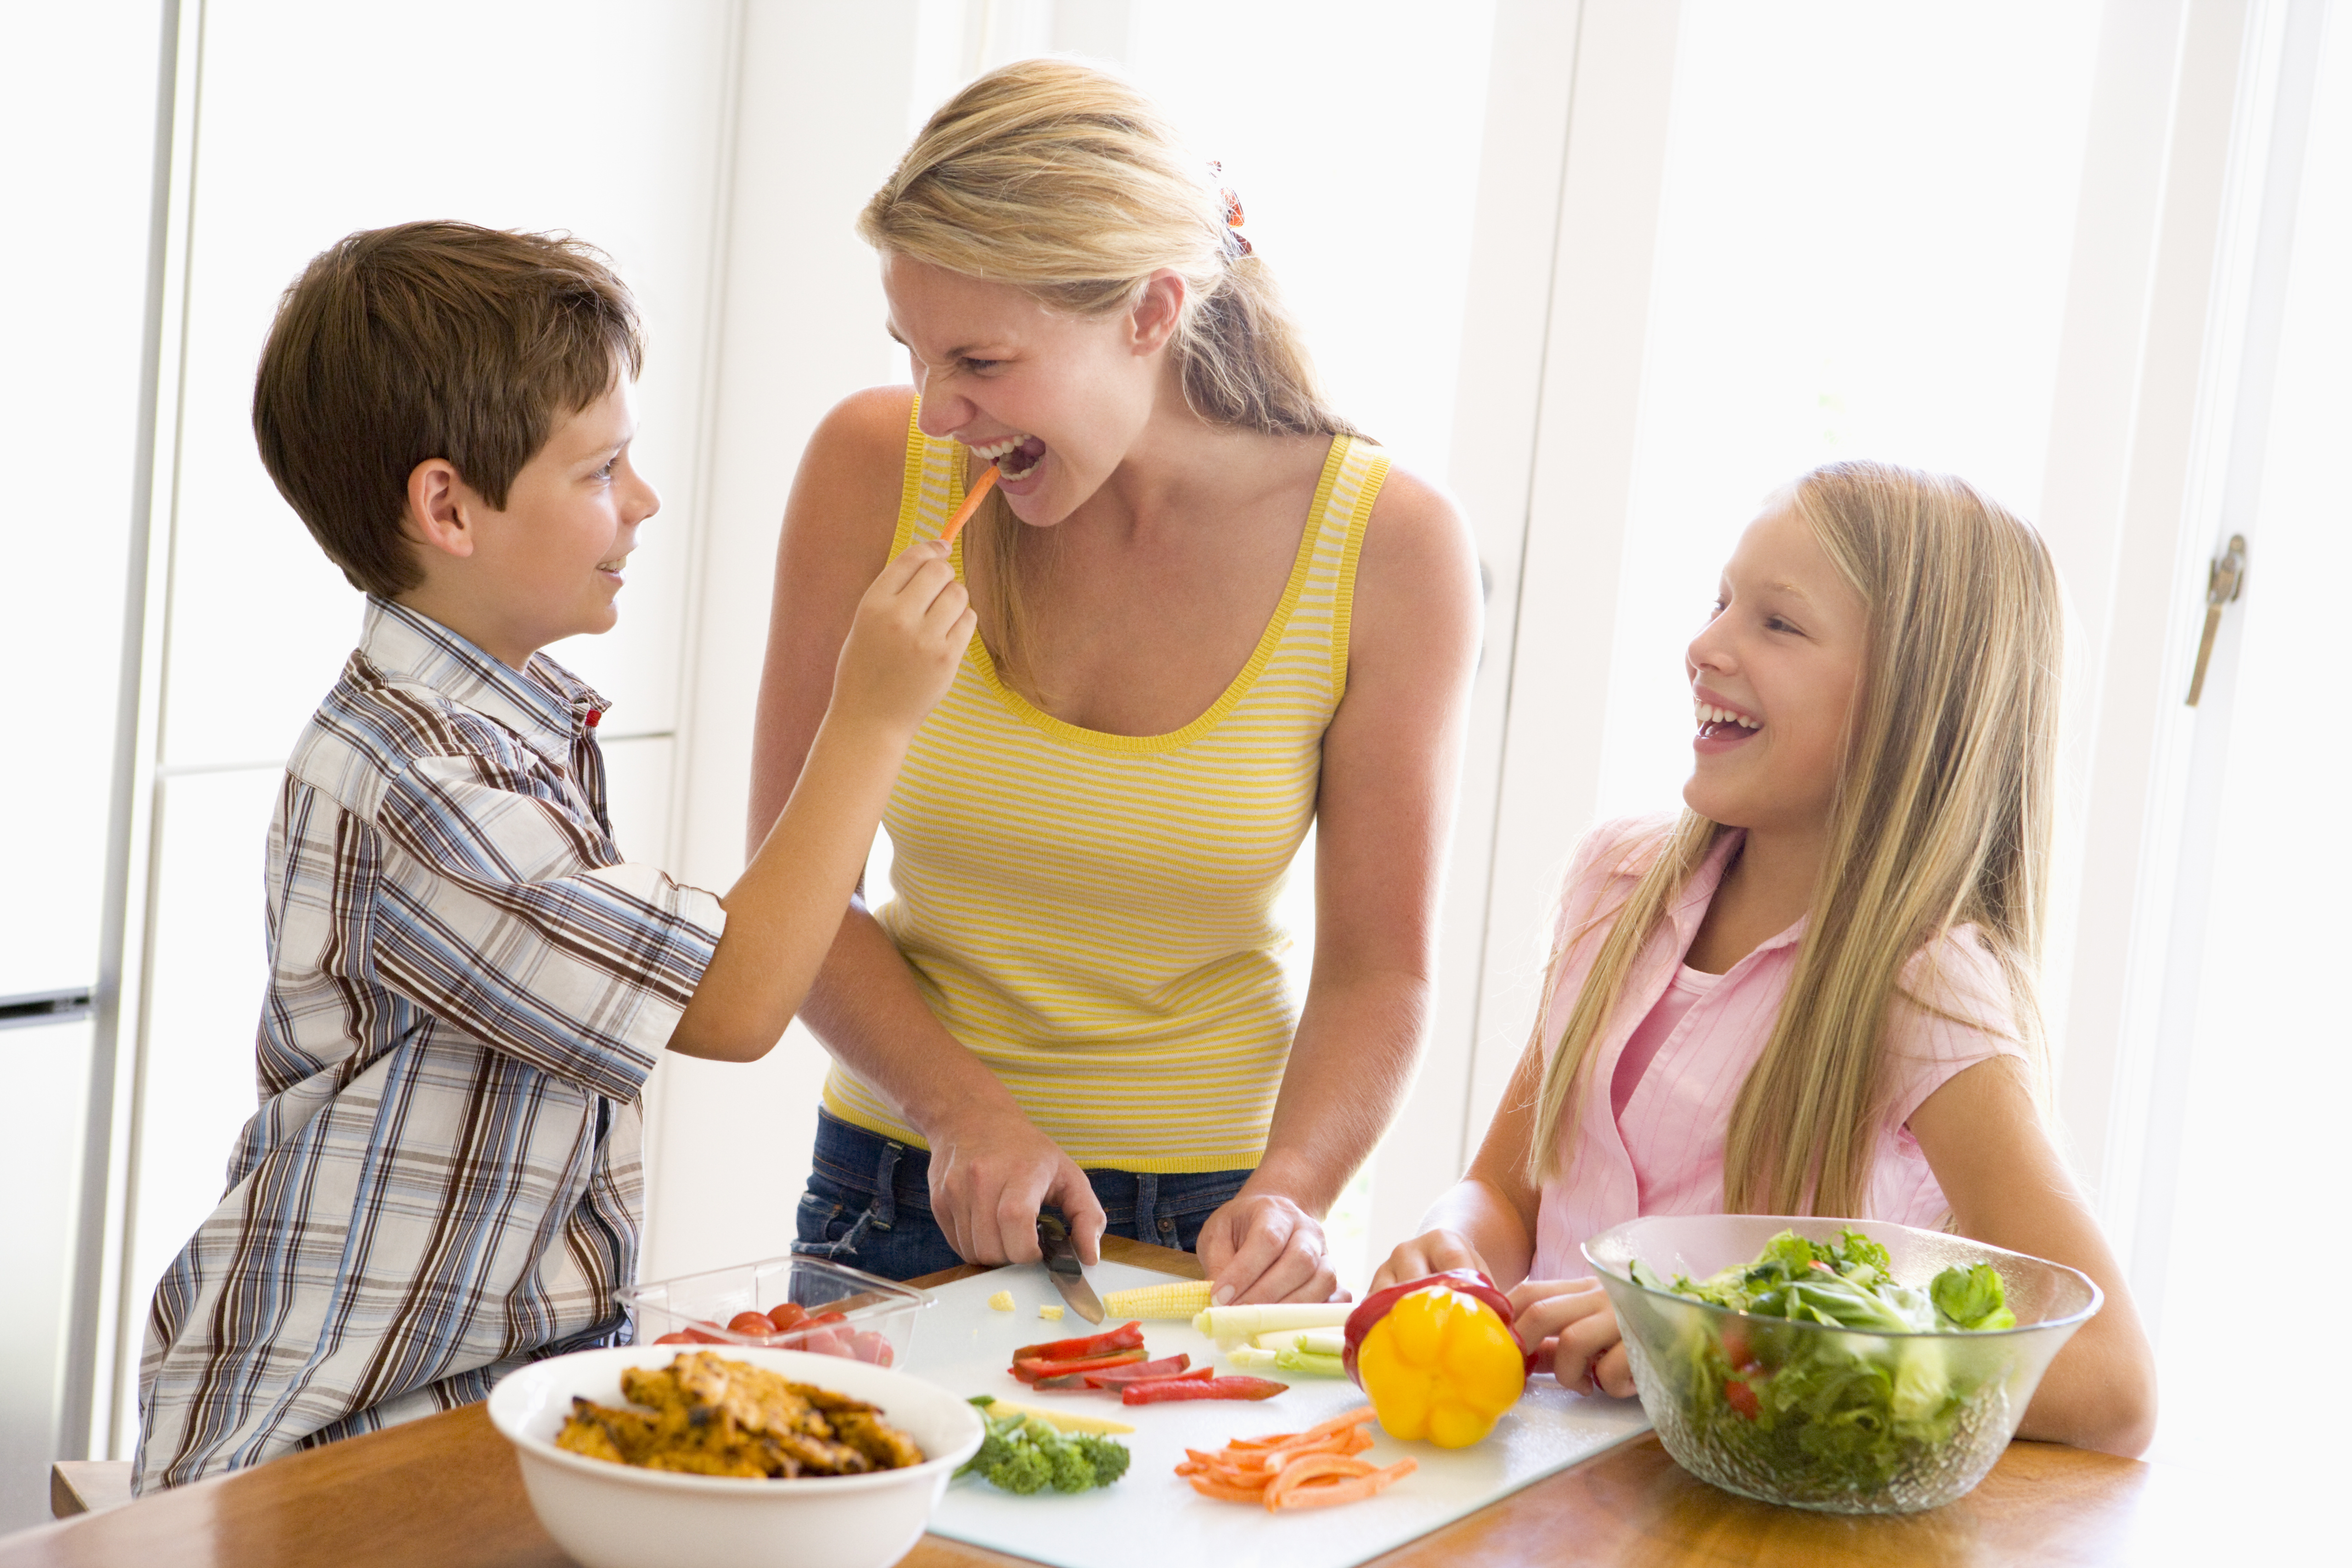 Busy preparing. Здоровое питание в семье. Правильное питание семья. Полезная еда для детей. Здоровое питание для детей.